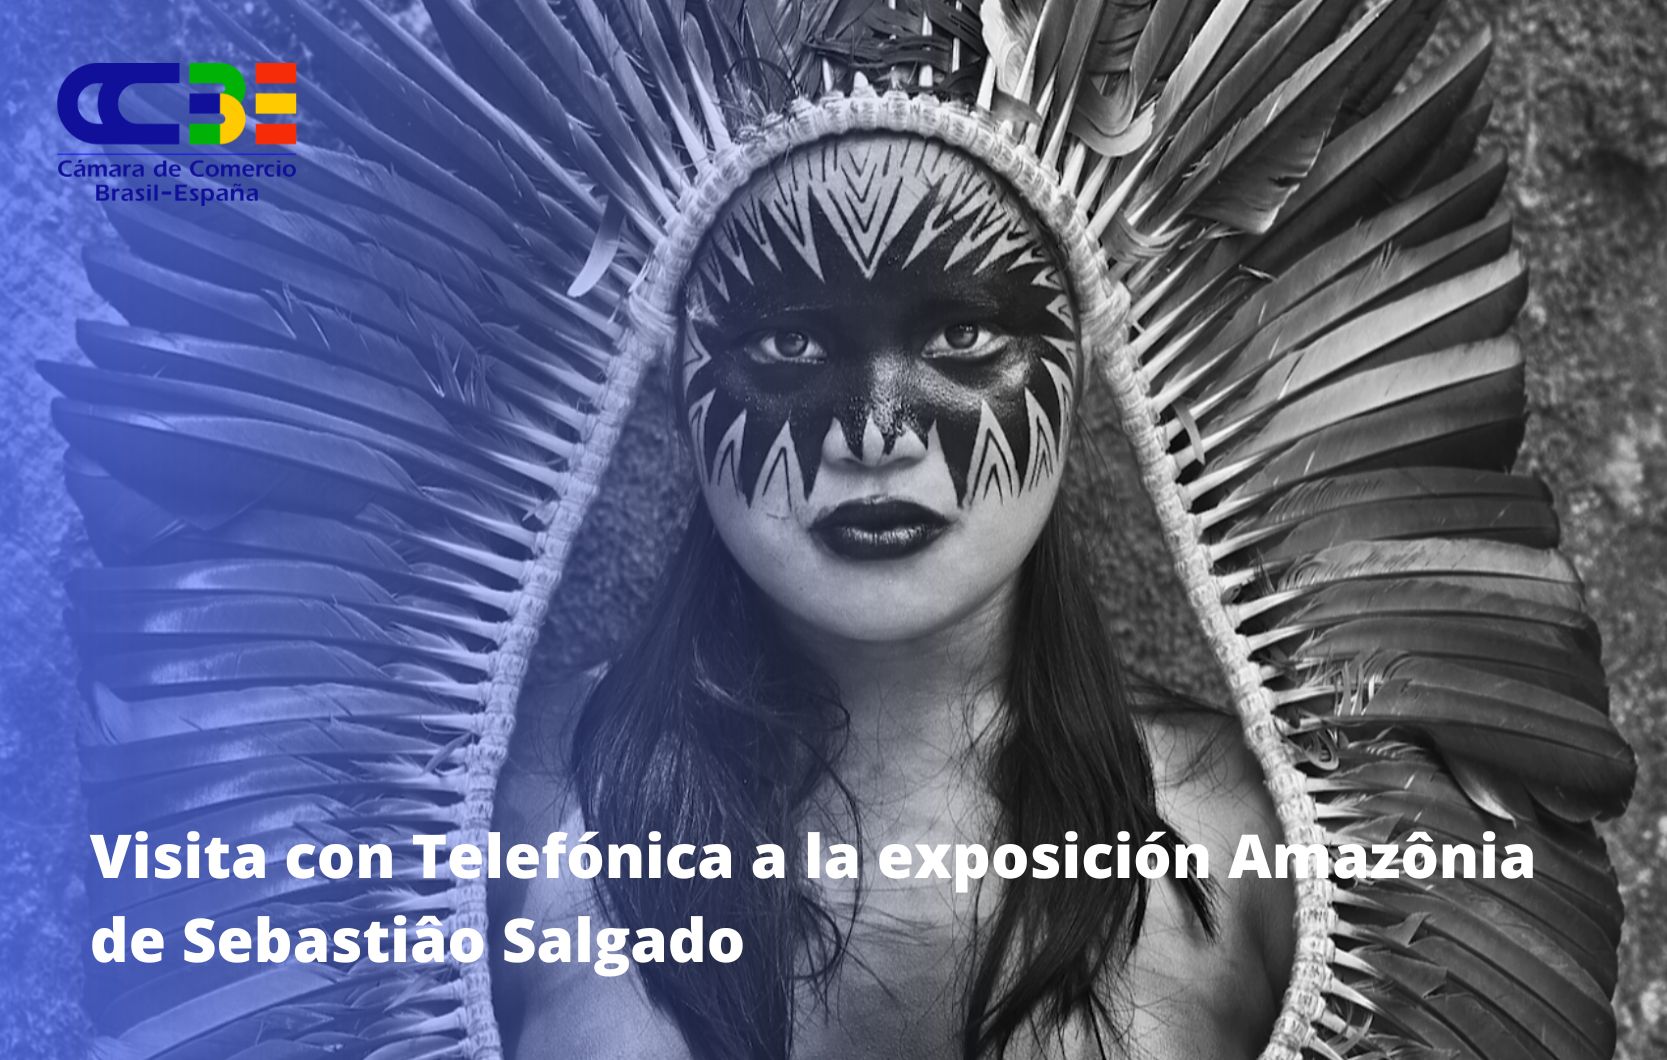 La junta directiva de la CCBE visita la exposición Amazônia de Sebastião Salgado en el marco del centenario de Telefónica